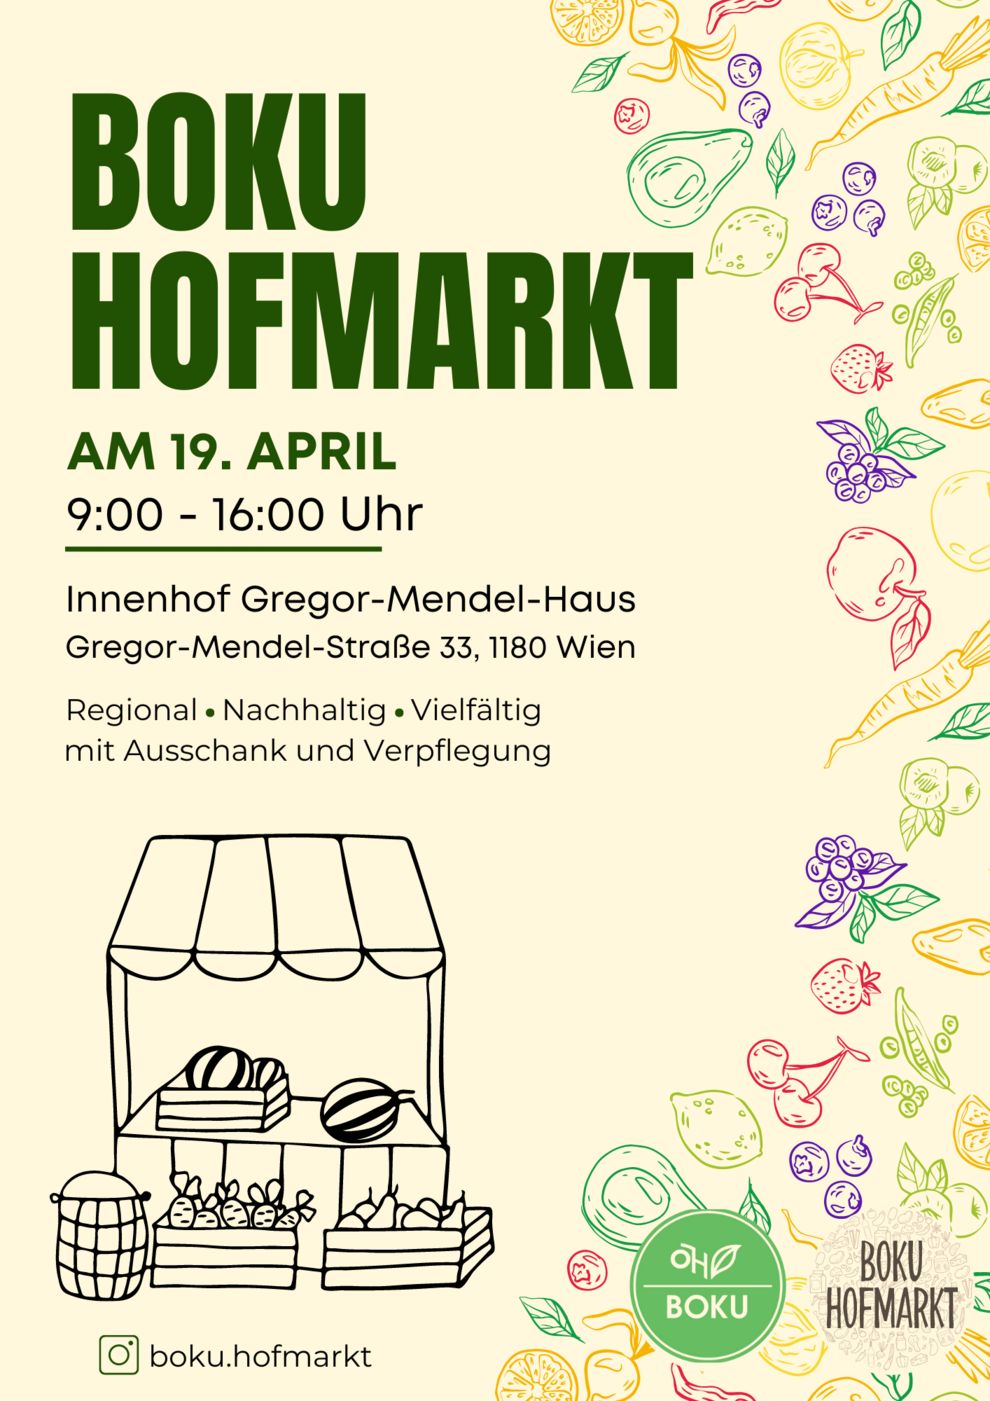 Der BOKU Hofmarkt findet am 19. April von 9:00-16:00 Uhr im Innenhof des Gregor-Mendel-Hauses statt